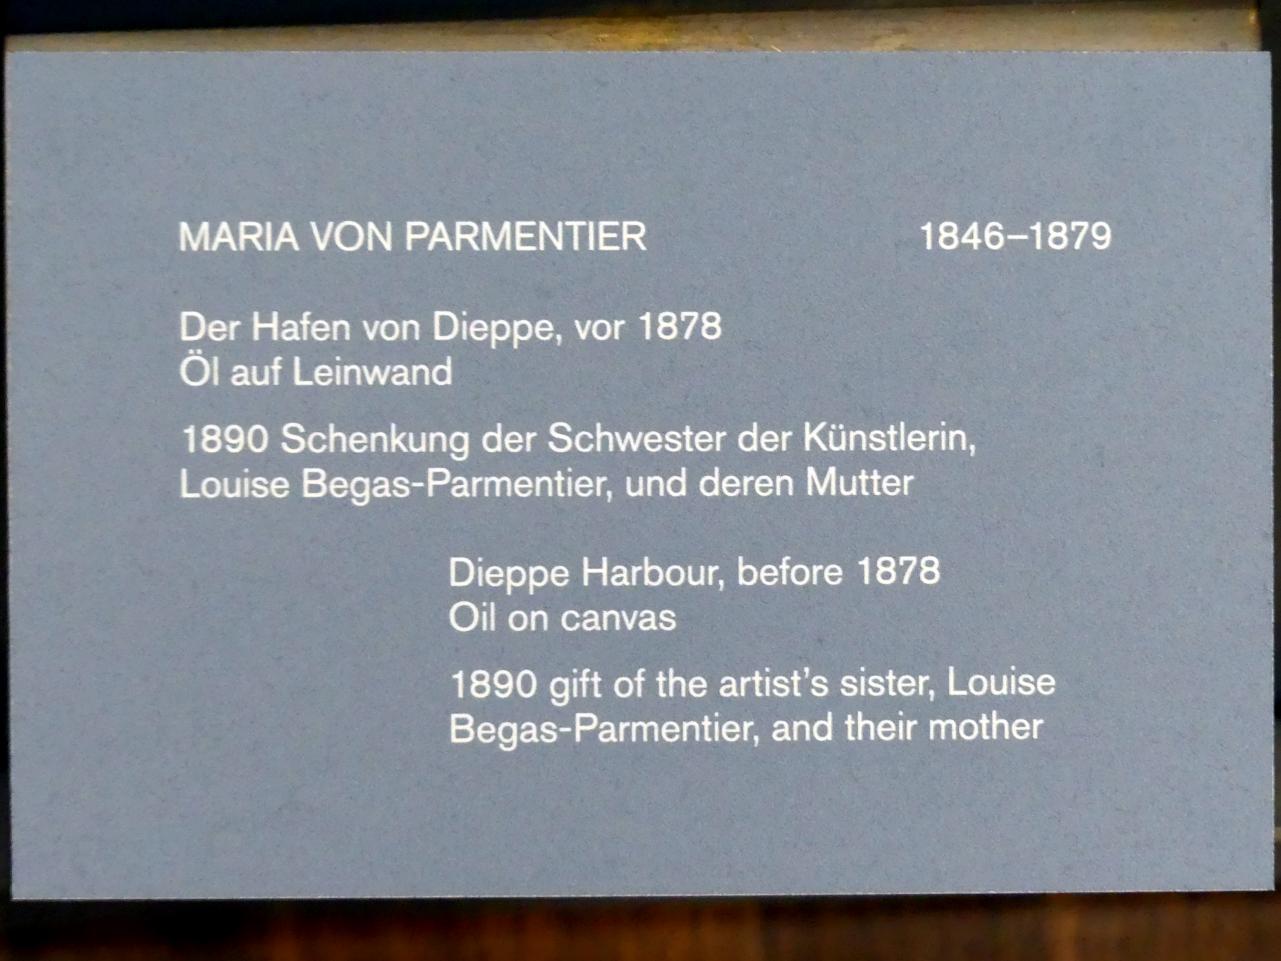 Maria von Parmentier (1877), Der Hafen von Dieppe, Berlin, Alte Nationalgalerie, Saal 307, Künstlerinnen der Nationalgalerie vor 1919, vor 1878, Bild 2/2